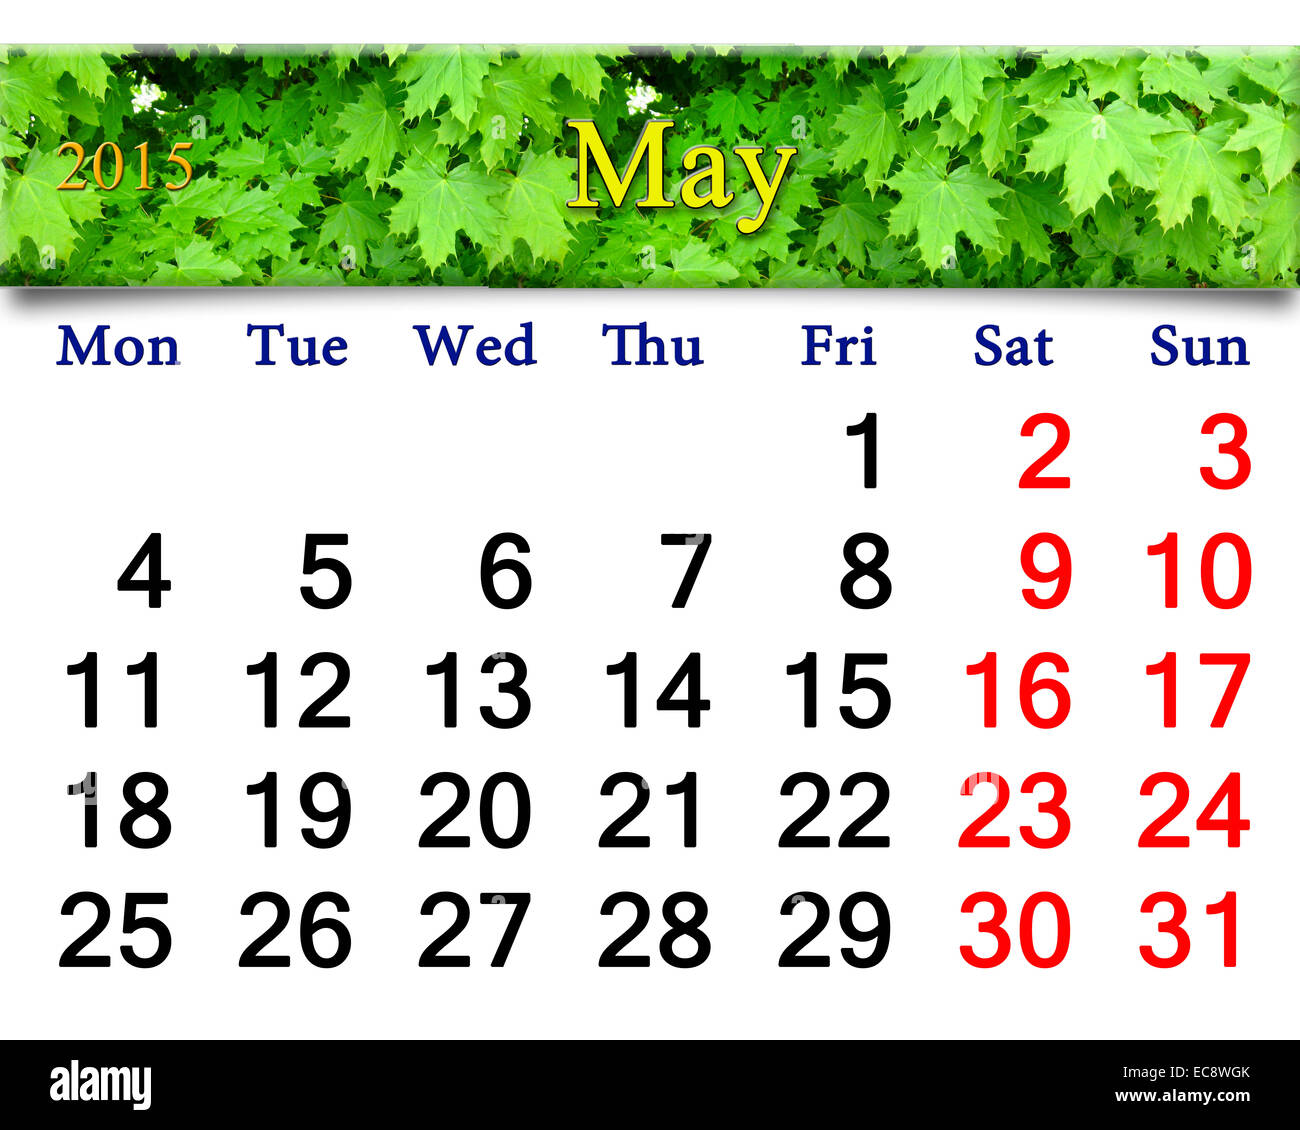 Calendrier de mai de l'année 2015 sur l'érable vert en arrière-plan Banque D'Images